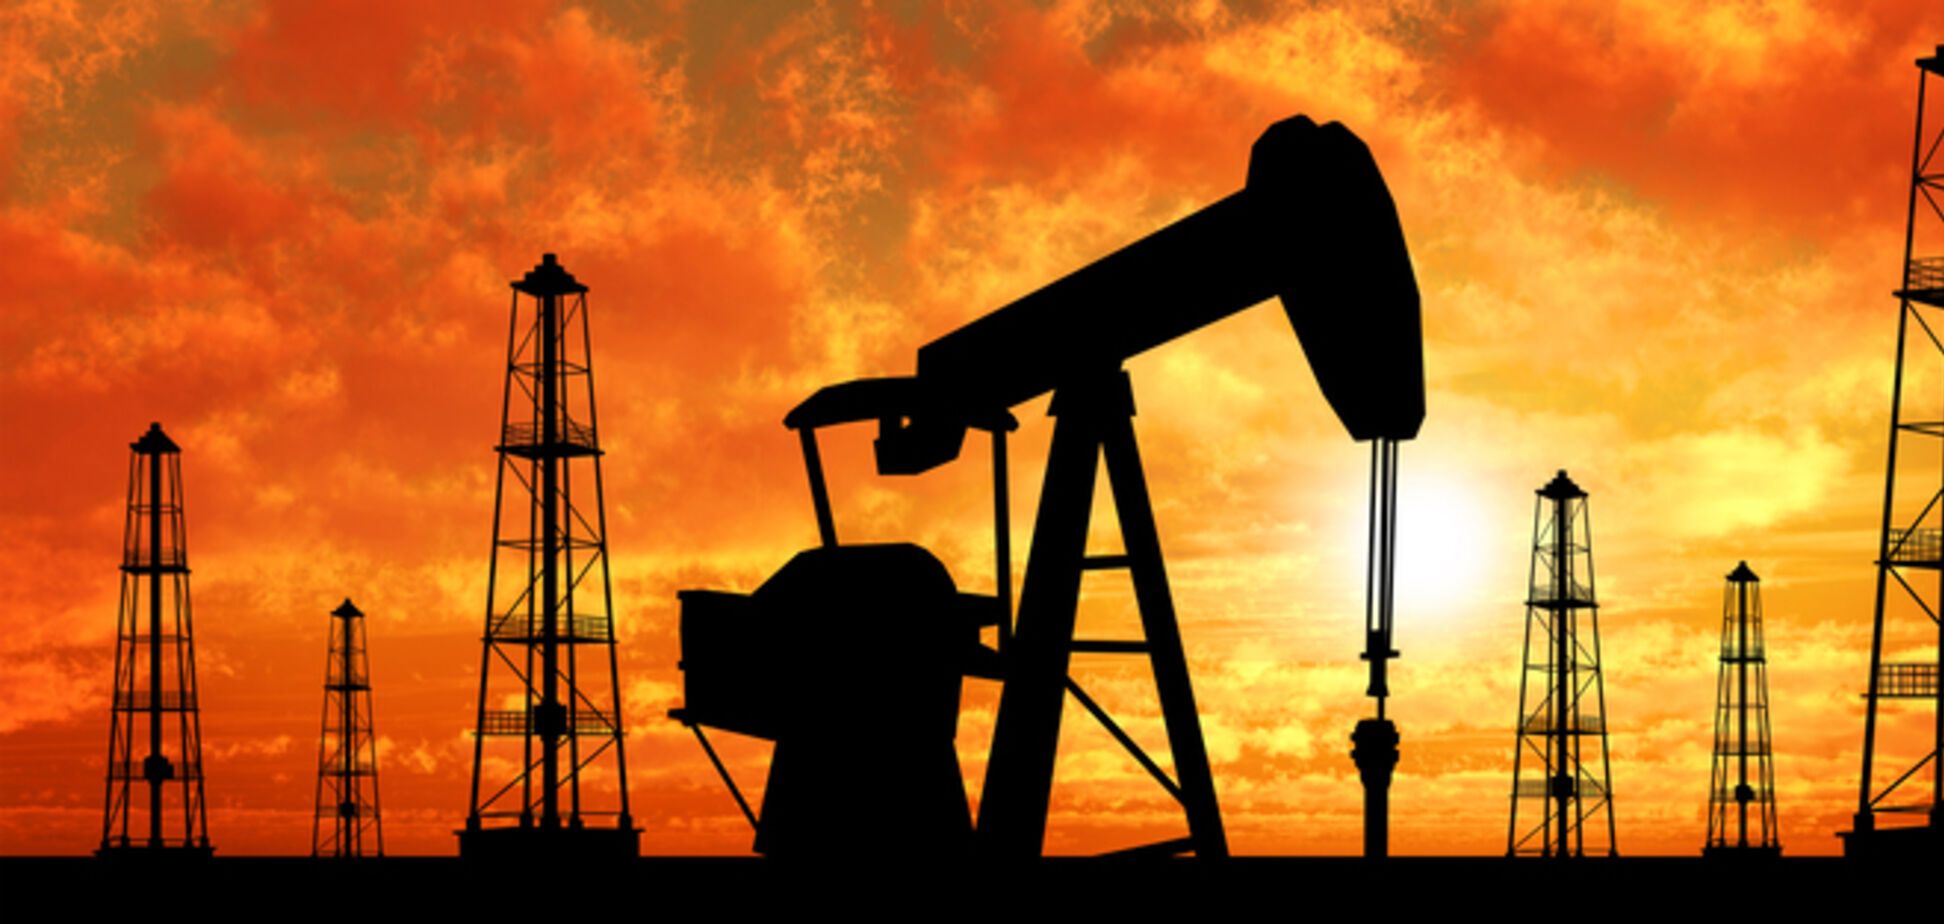 Стали известны причины падения цен на нефть - The Economist